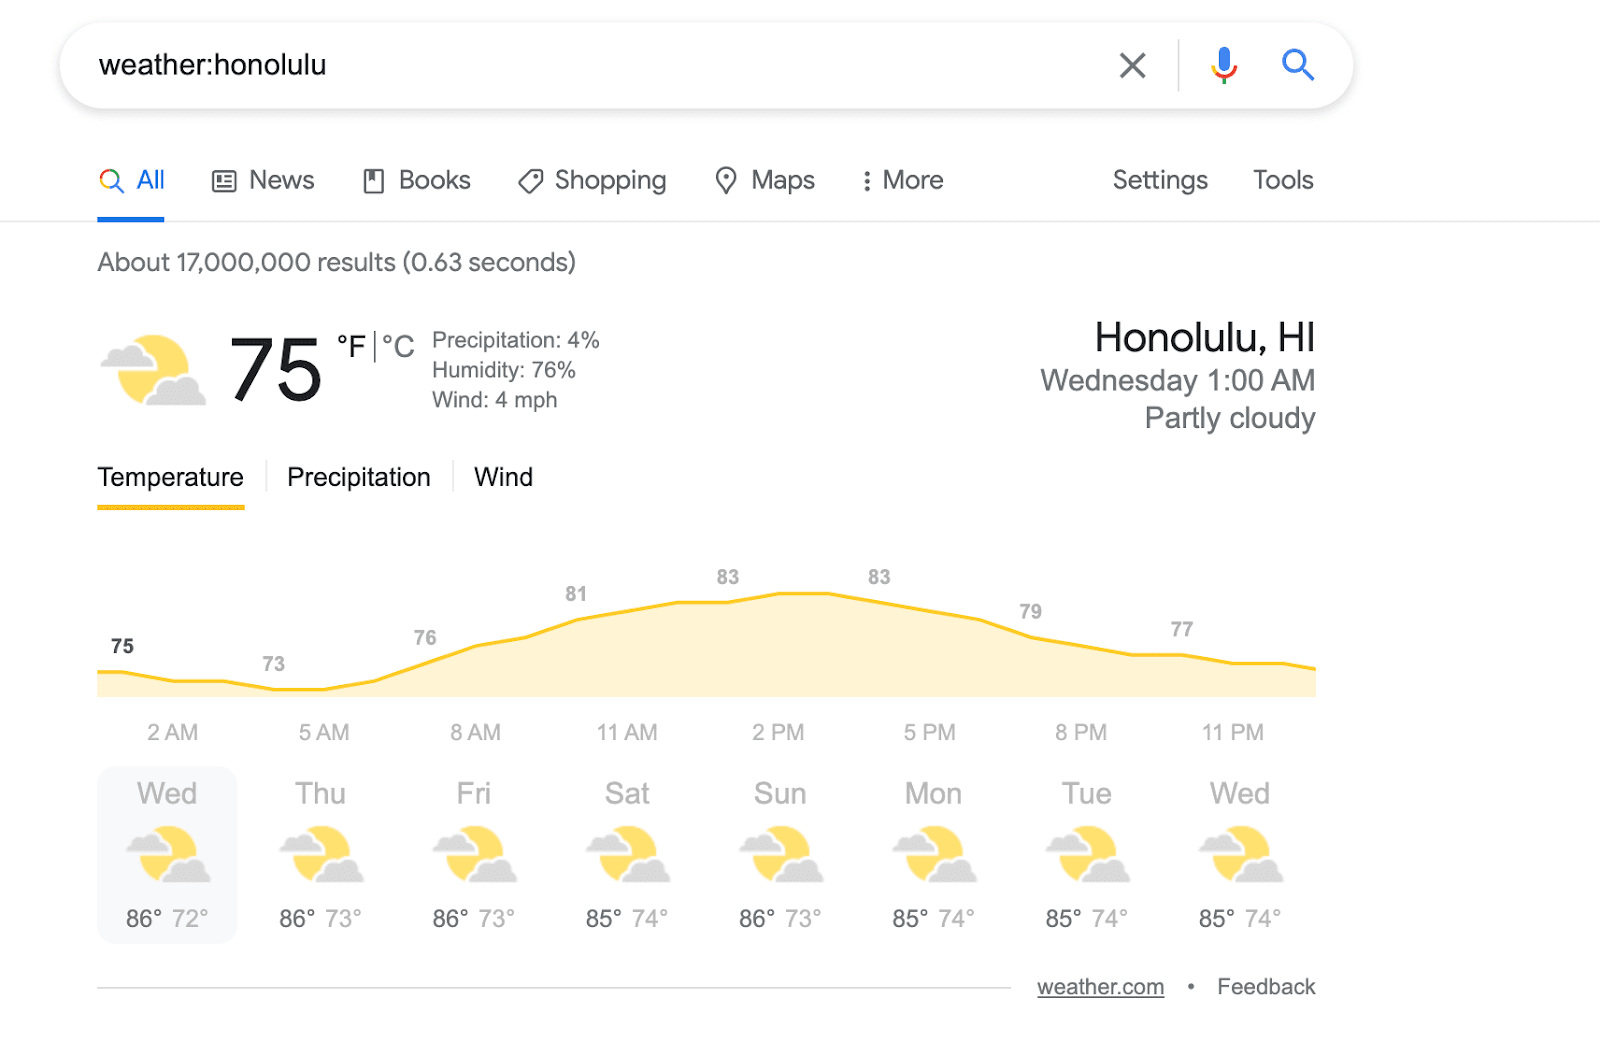 weather:honolulu